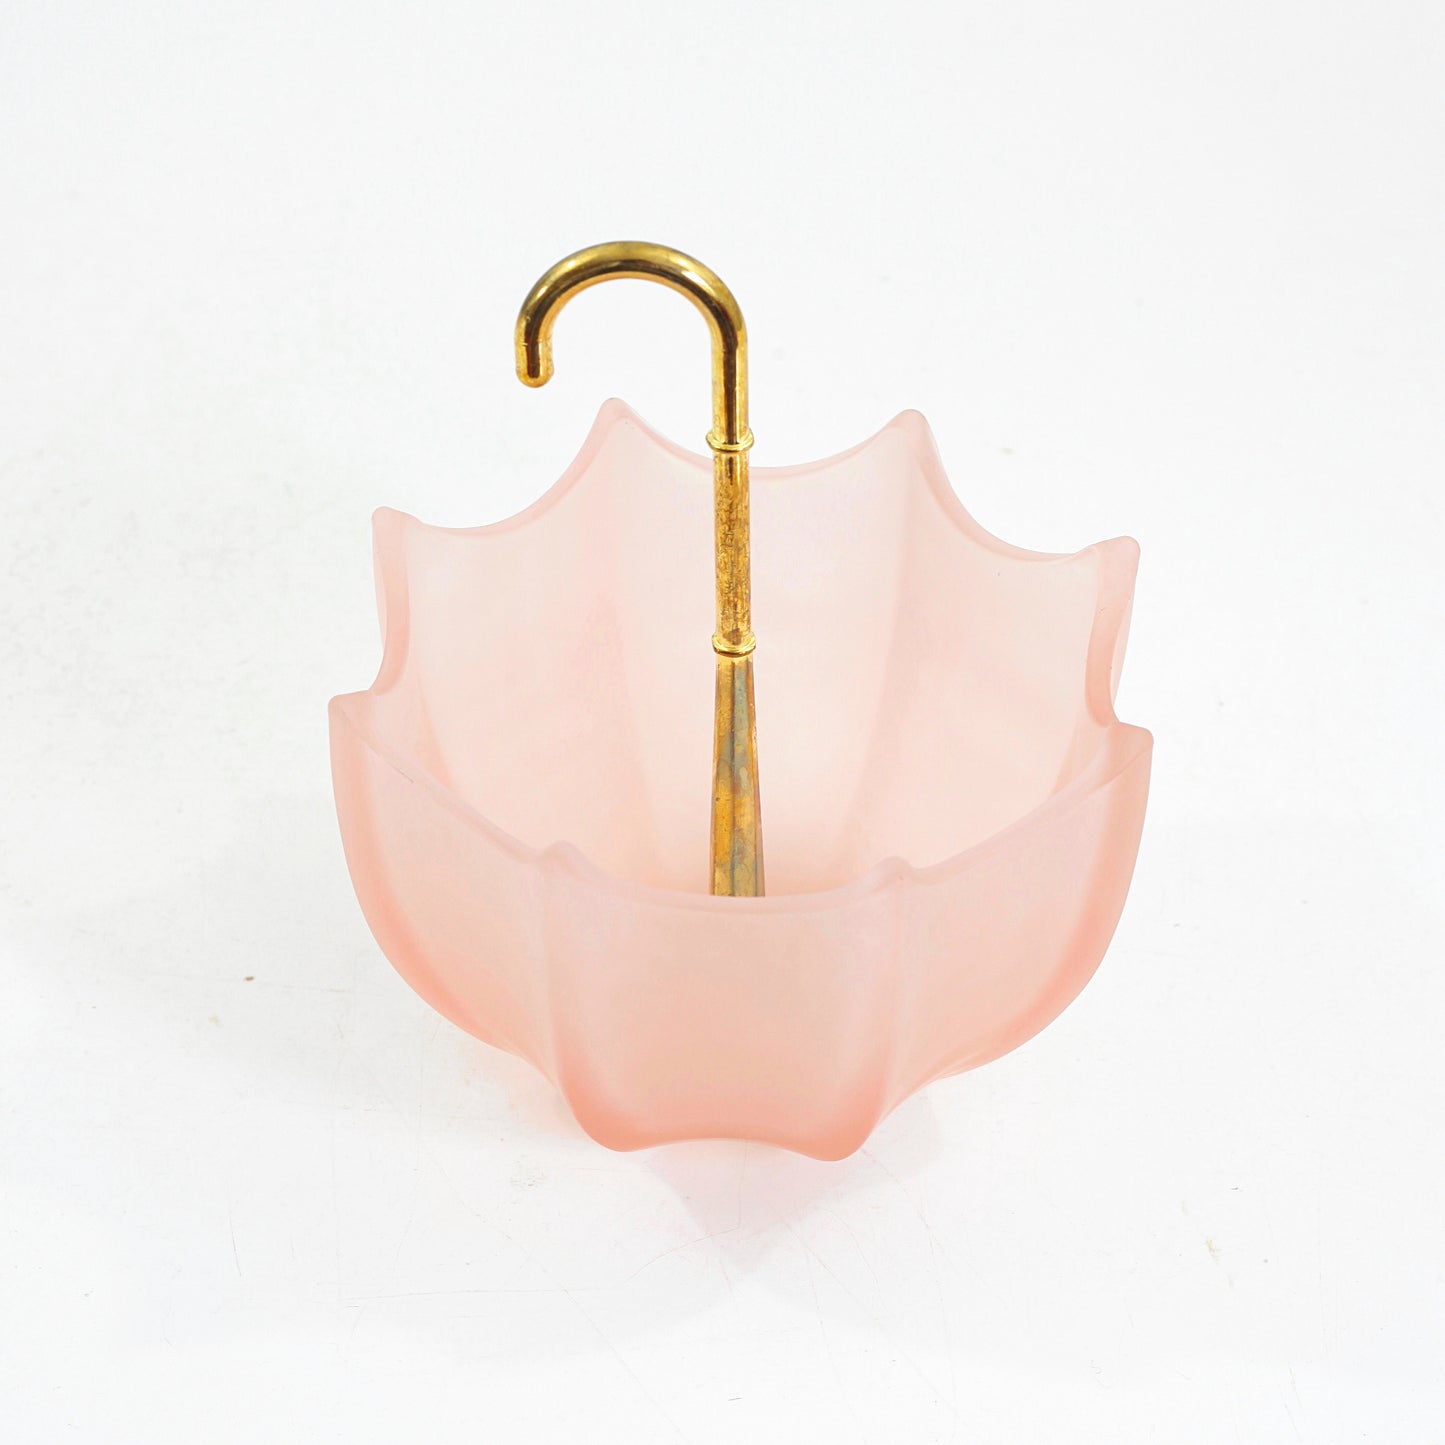 SOLD - Vintage Pink Glass Umbrella Bowl